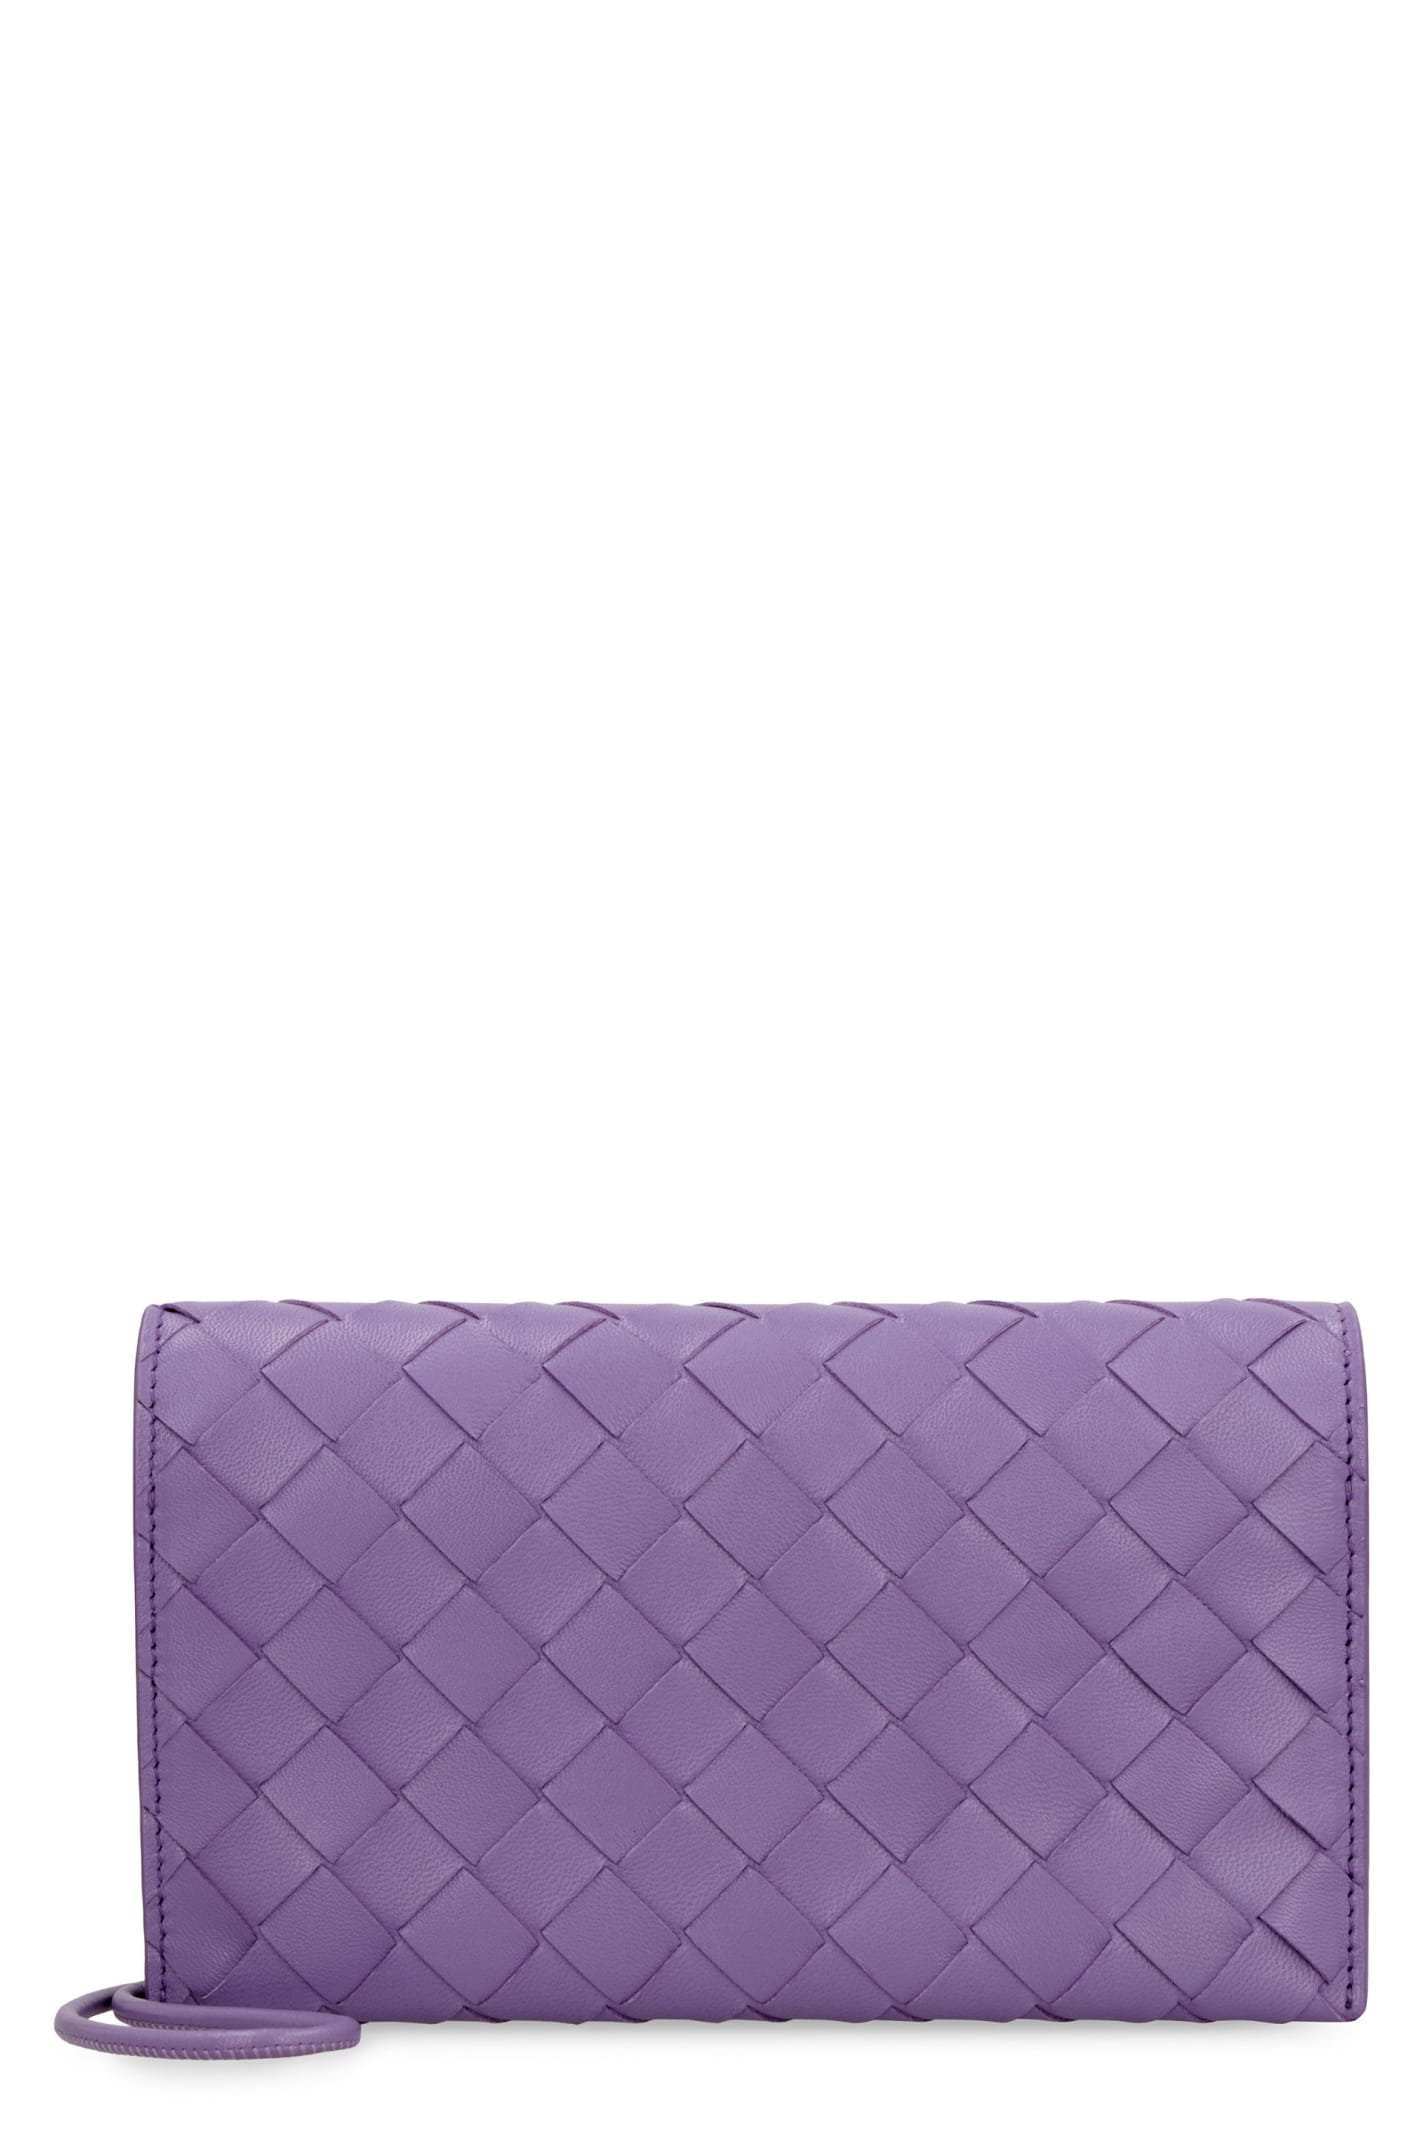 Bottega Veneta Leather Wallet With Shoulder Strap